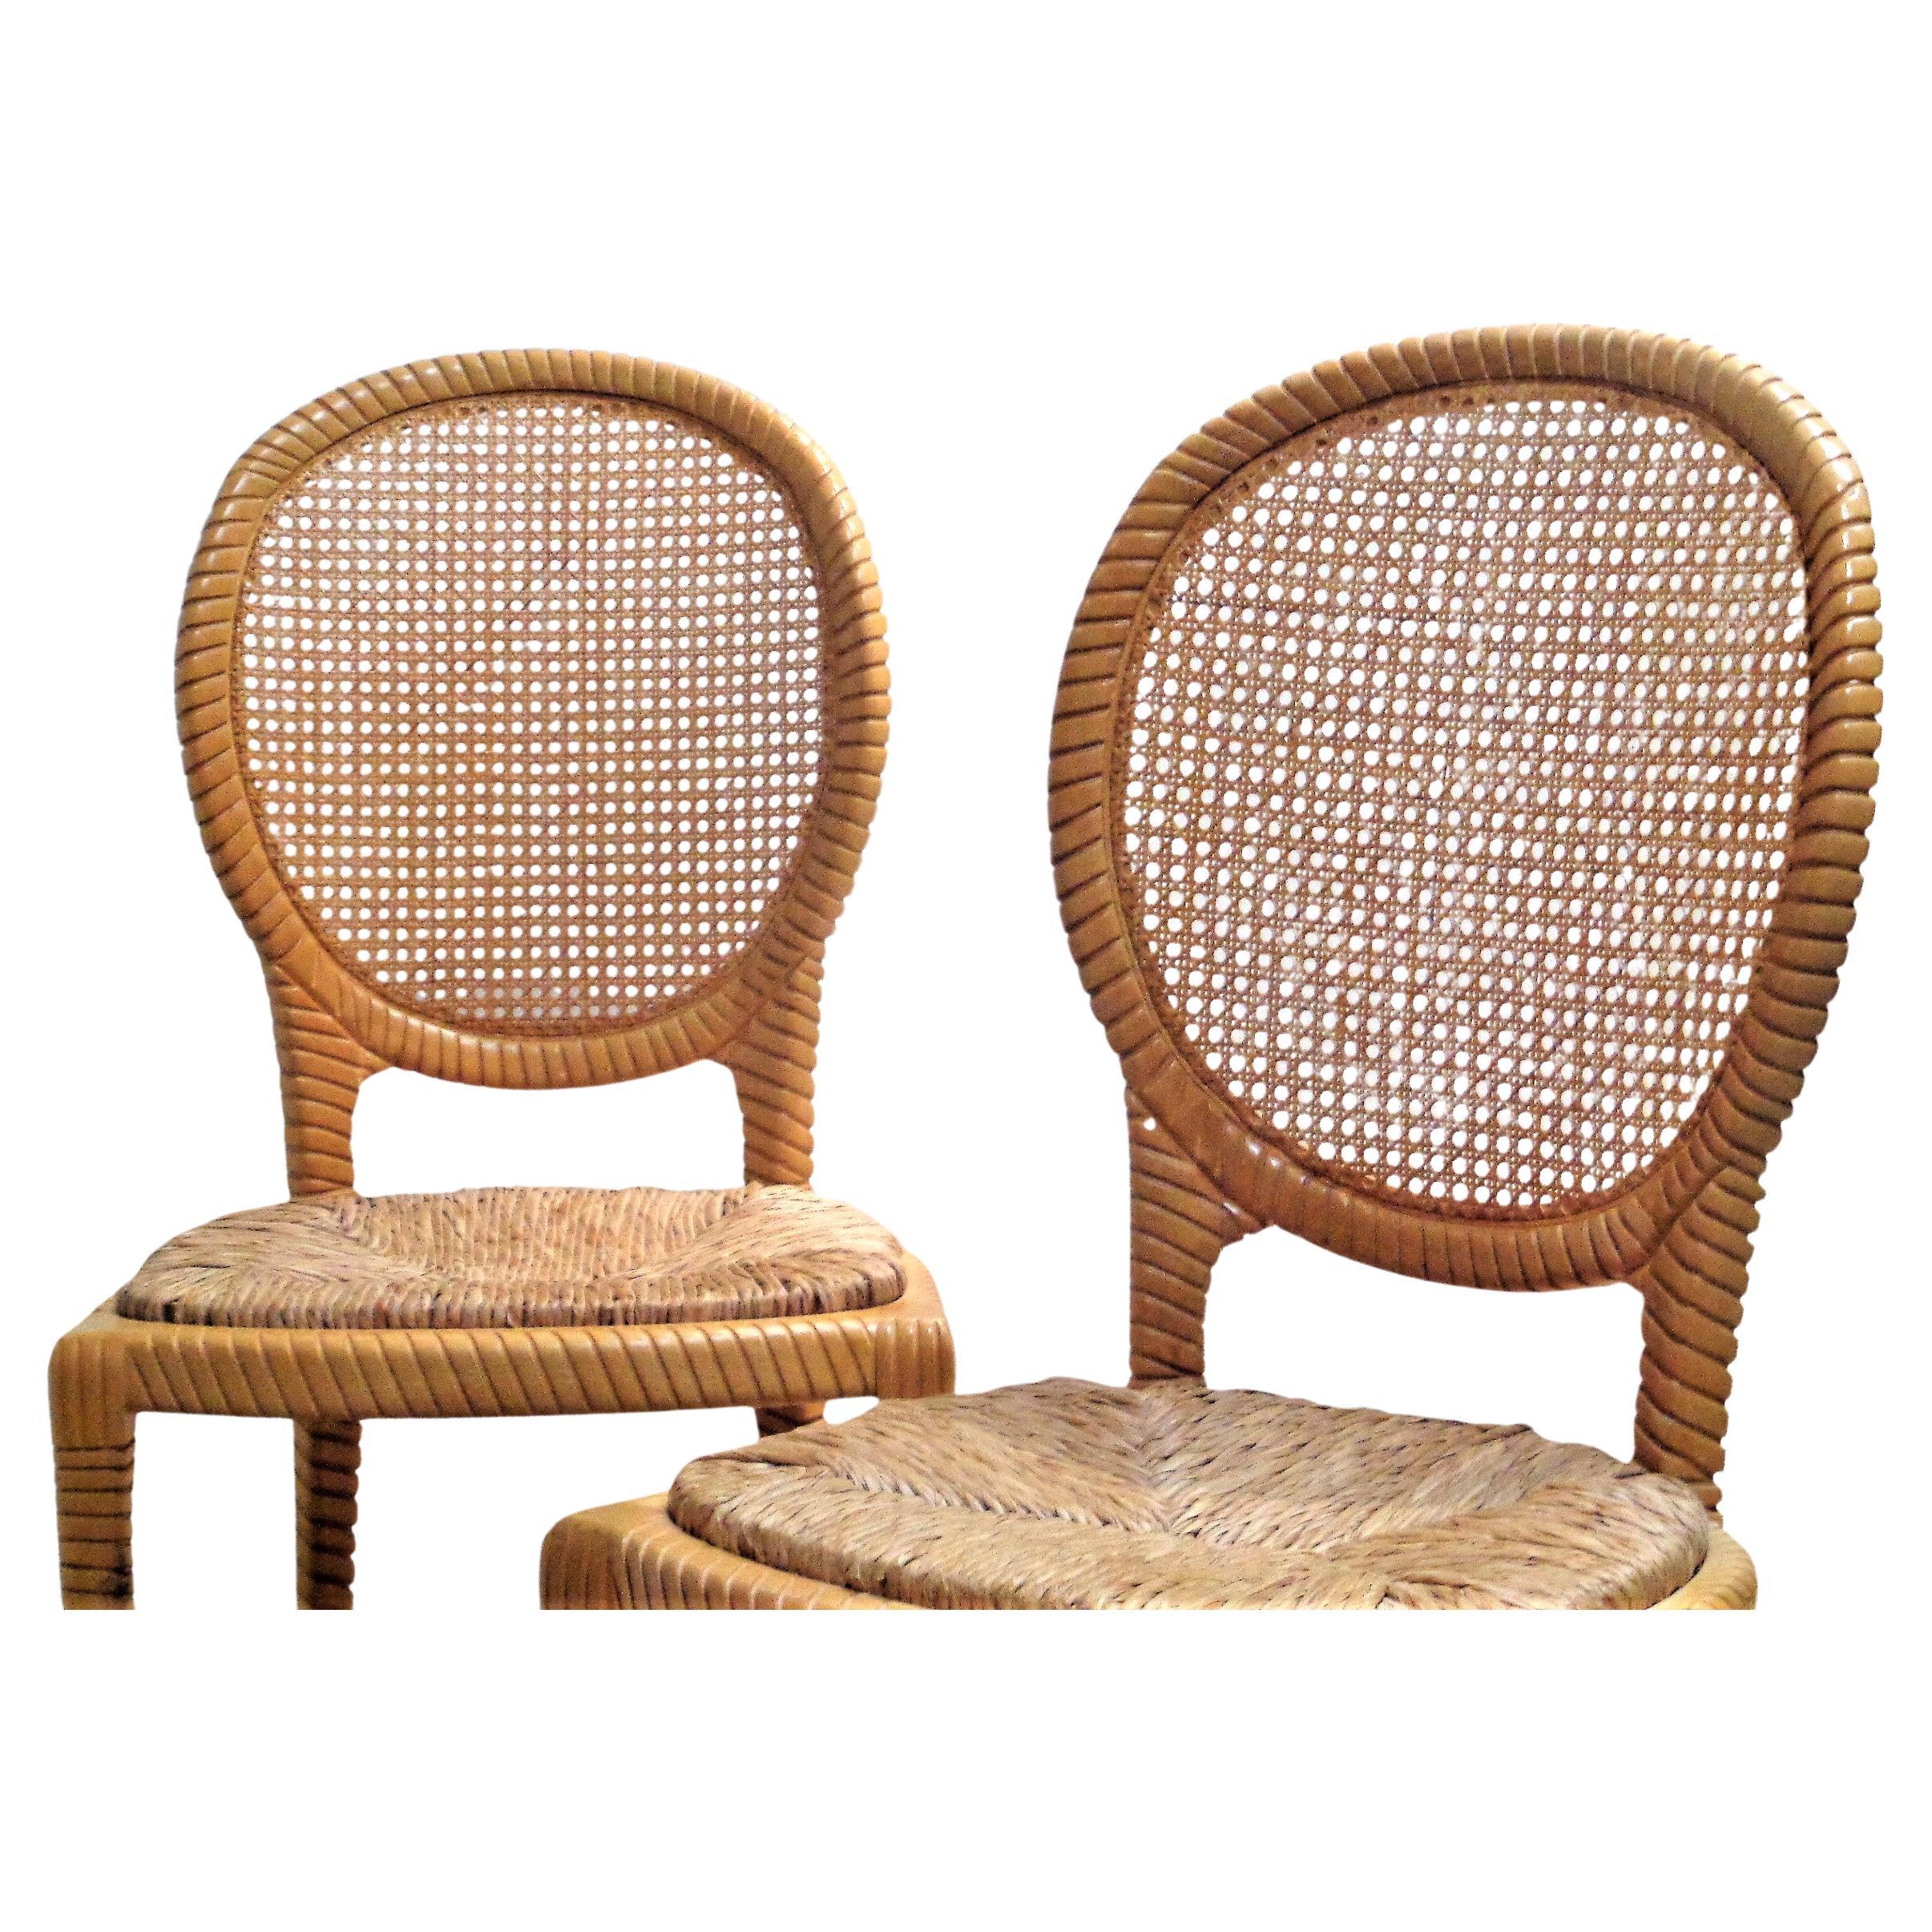 Dans le style de la Casa Stradivari, une paire de chaises d'appoint en fausse corde, des chaises de salle à manger avec des cadres en bois dur sculpté (soit hêtre / érable), des dossiers en canne et des sièges en palmier naturel tressé dans un bel